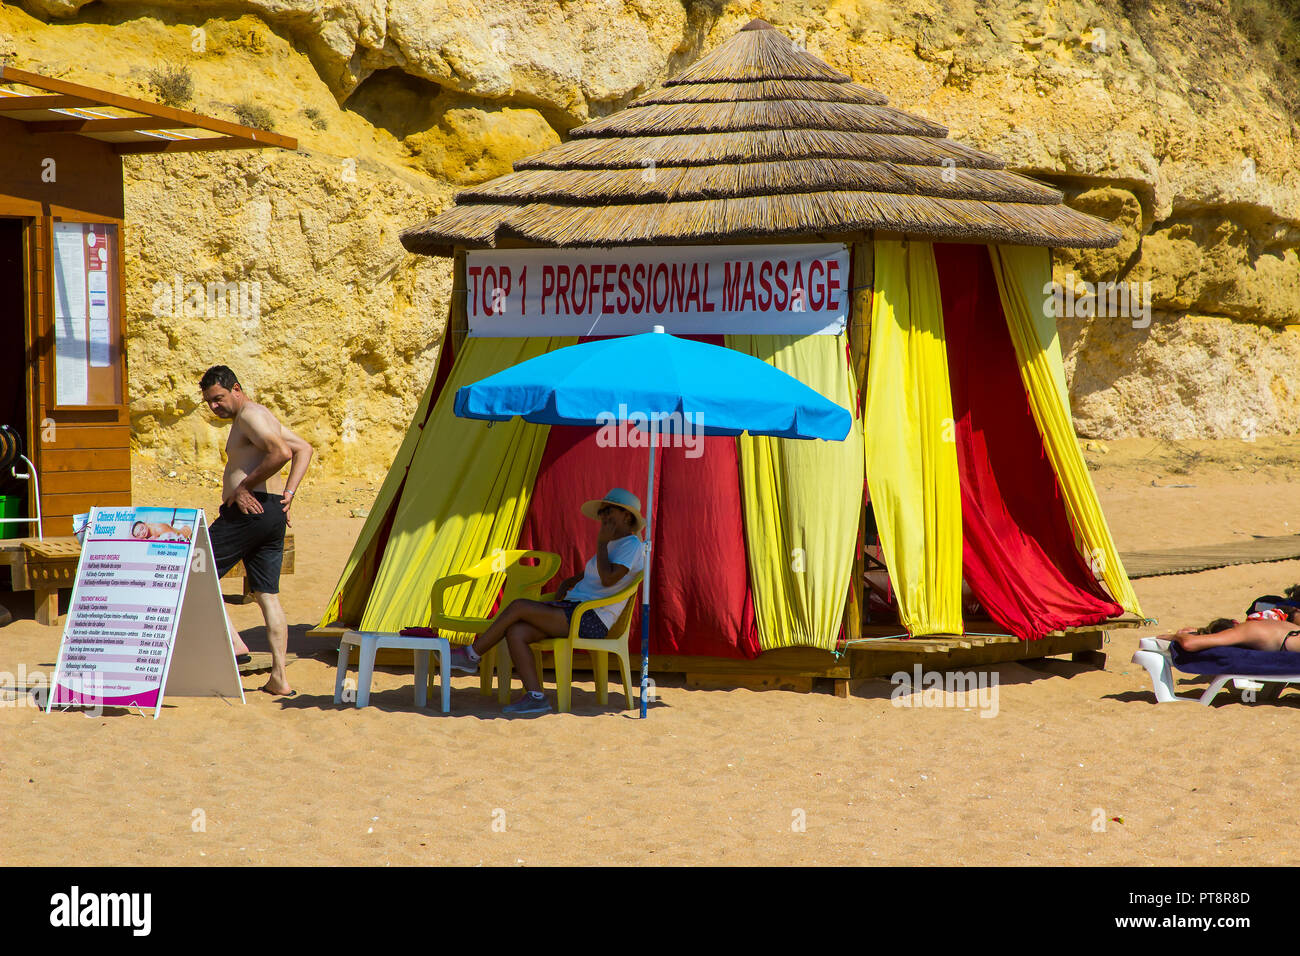 28 septembre 2018 un professionnel de massage tente sur la plage Praia Do Inatel plage près de la vieille ville Albuferia Portugal un jour ensoleillé chaud Banque D'Images